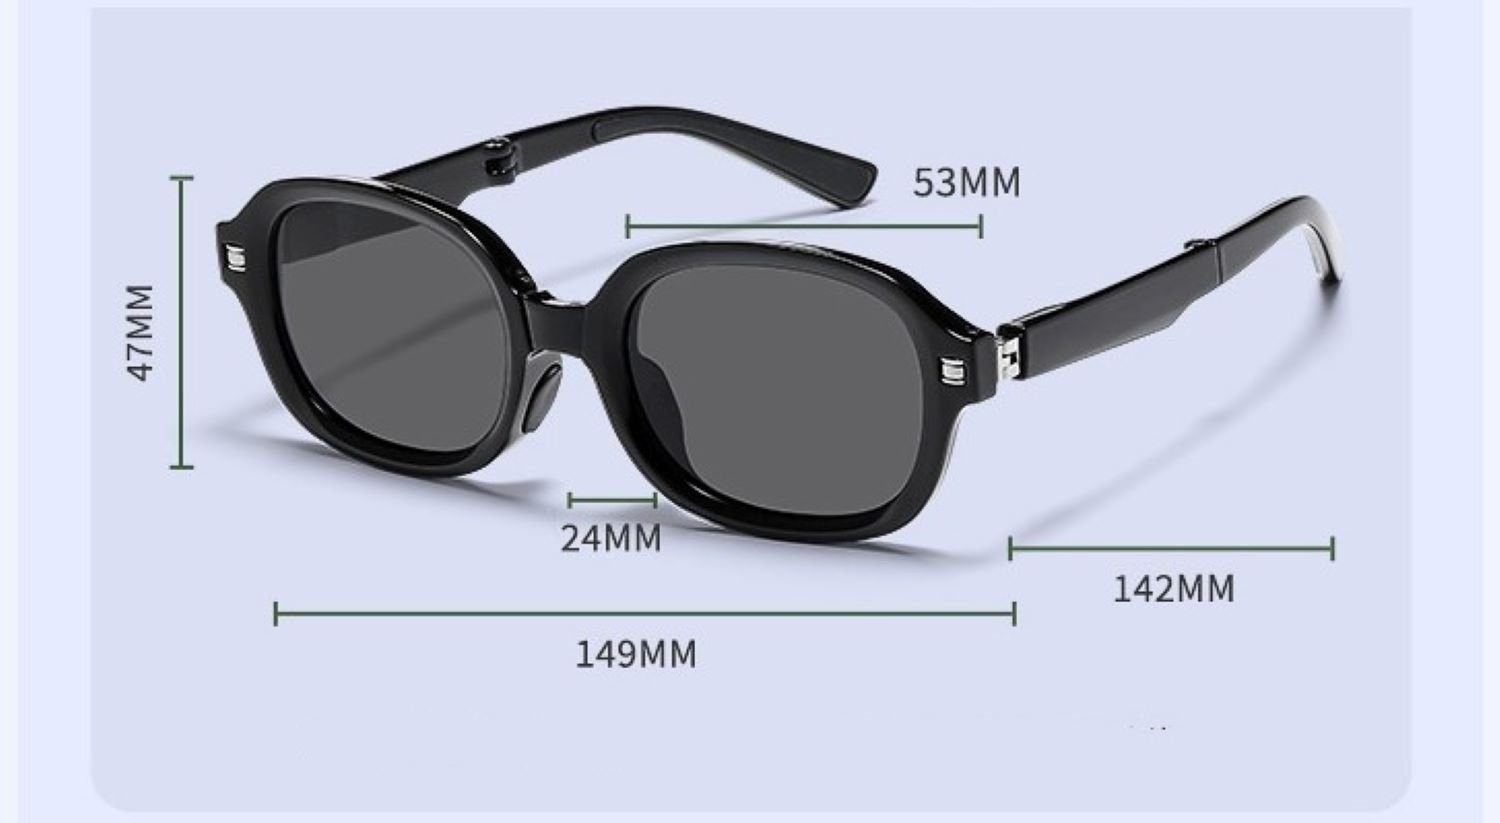 PACIEA Sonnenbrille PACIEA Sonnenbrille Schutz faltbar Brown UV400 100% Herren Damen polarisiert